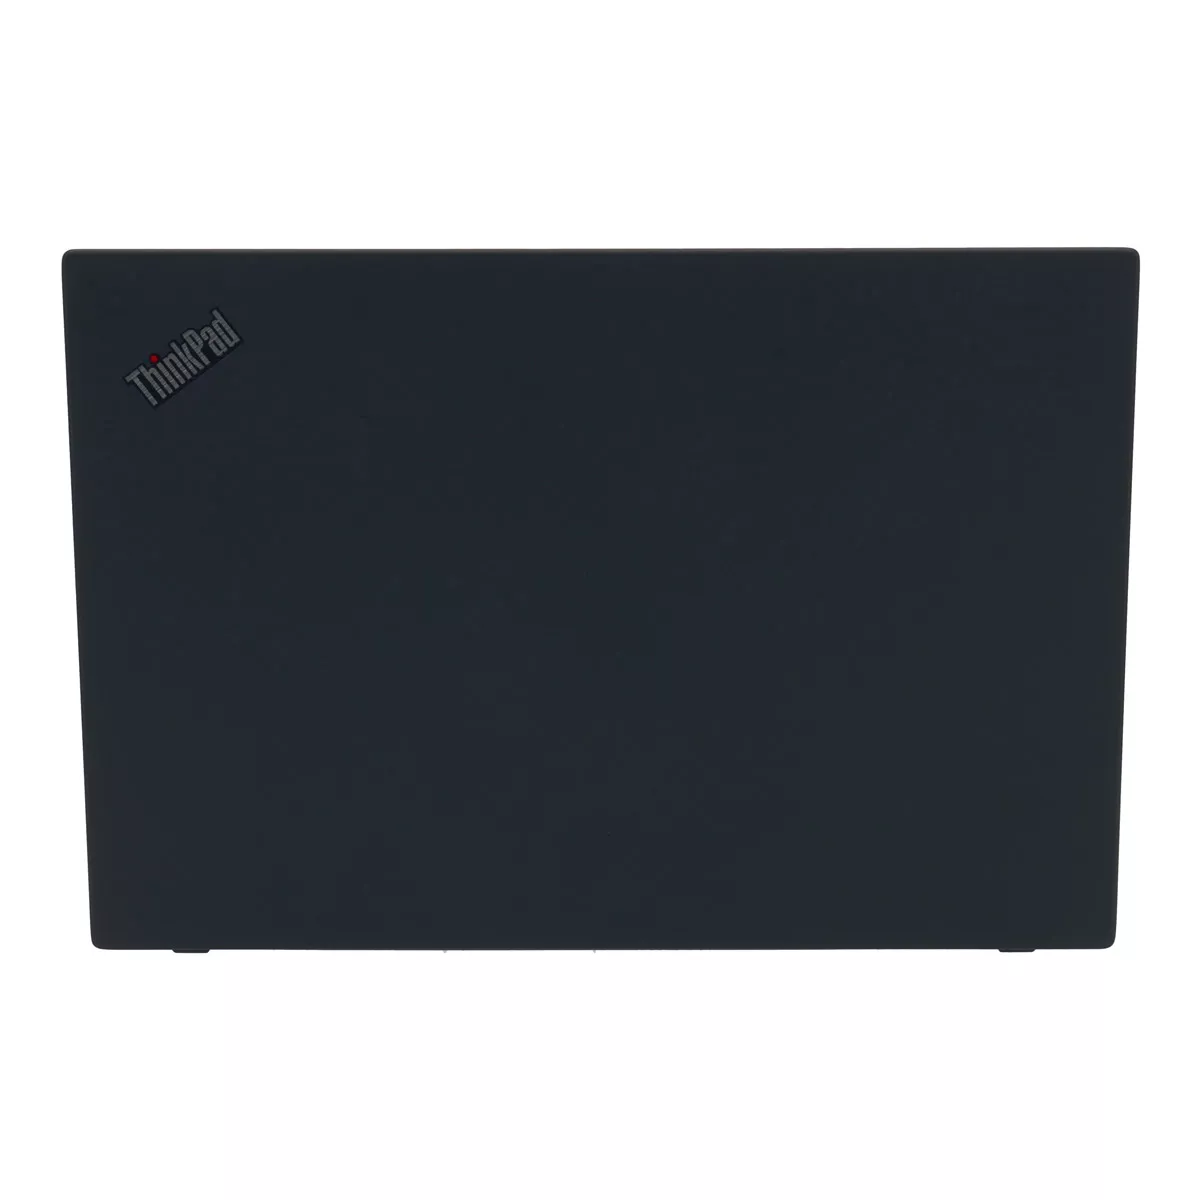 Lenovo ThinkPad T490 Core i5 8365U 8 GB 500 GB M.2 nVME SSD Webcam A